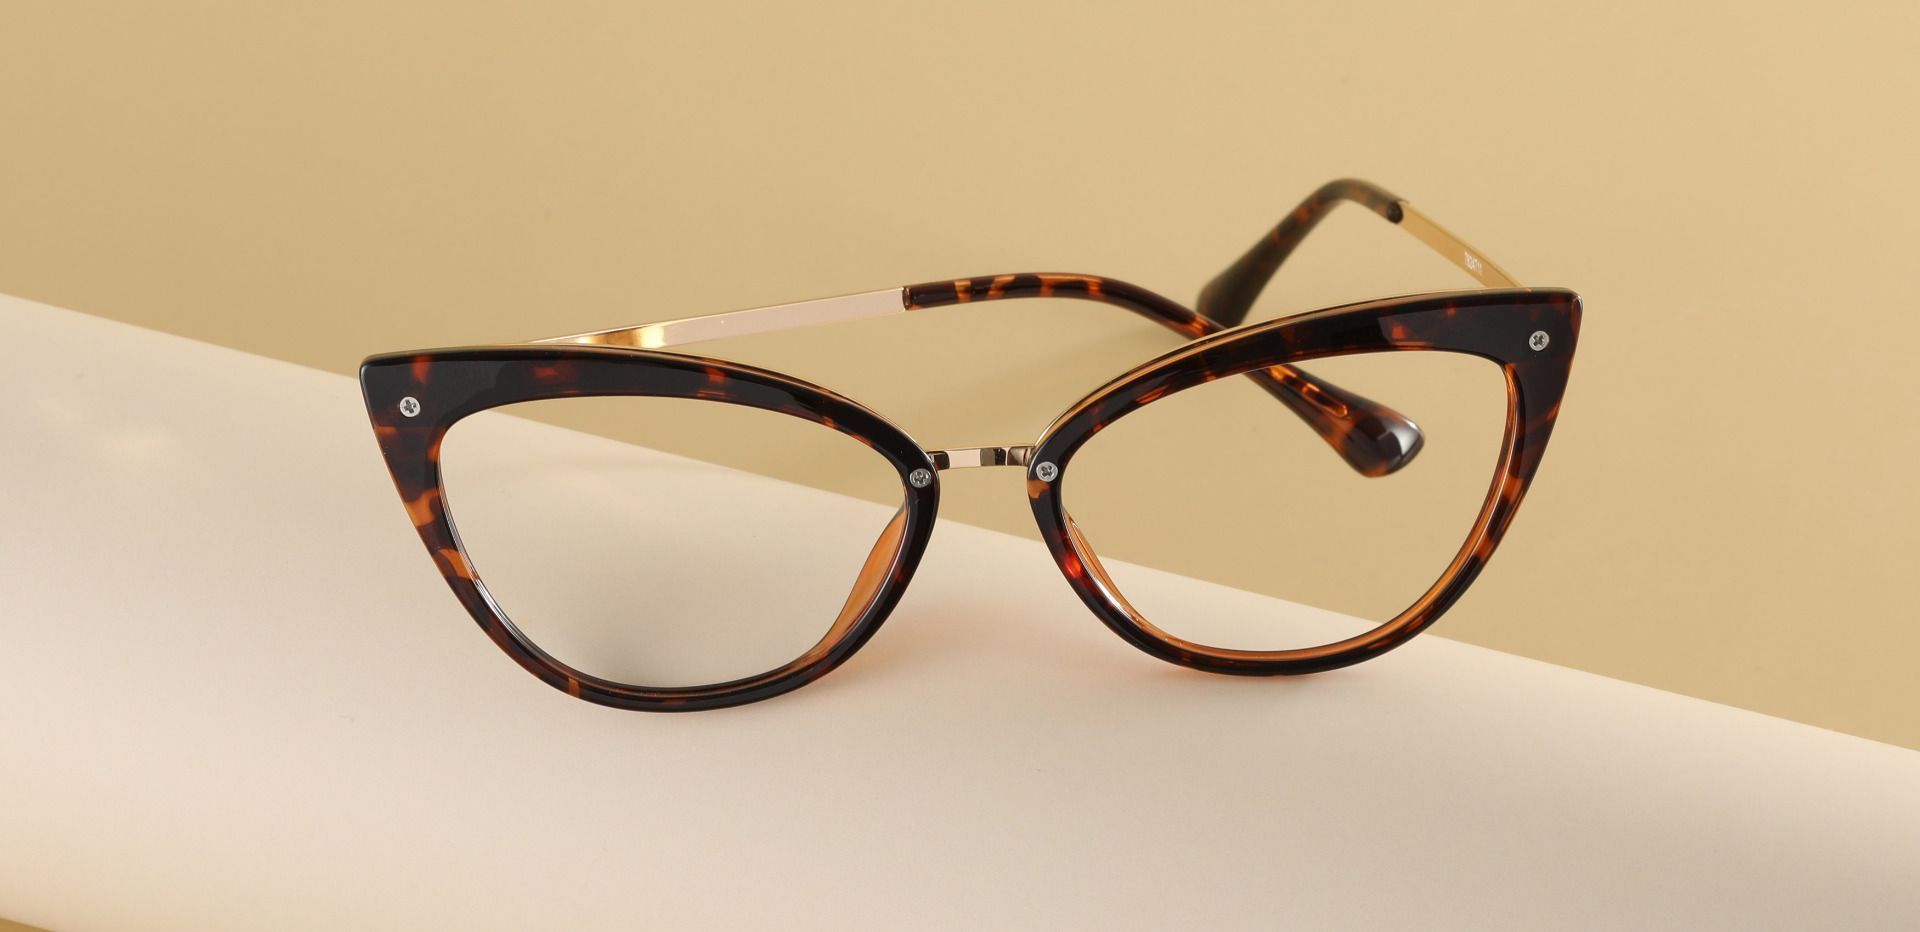 Glenda Cat Eye Prescription Glasses - Tortoise